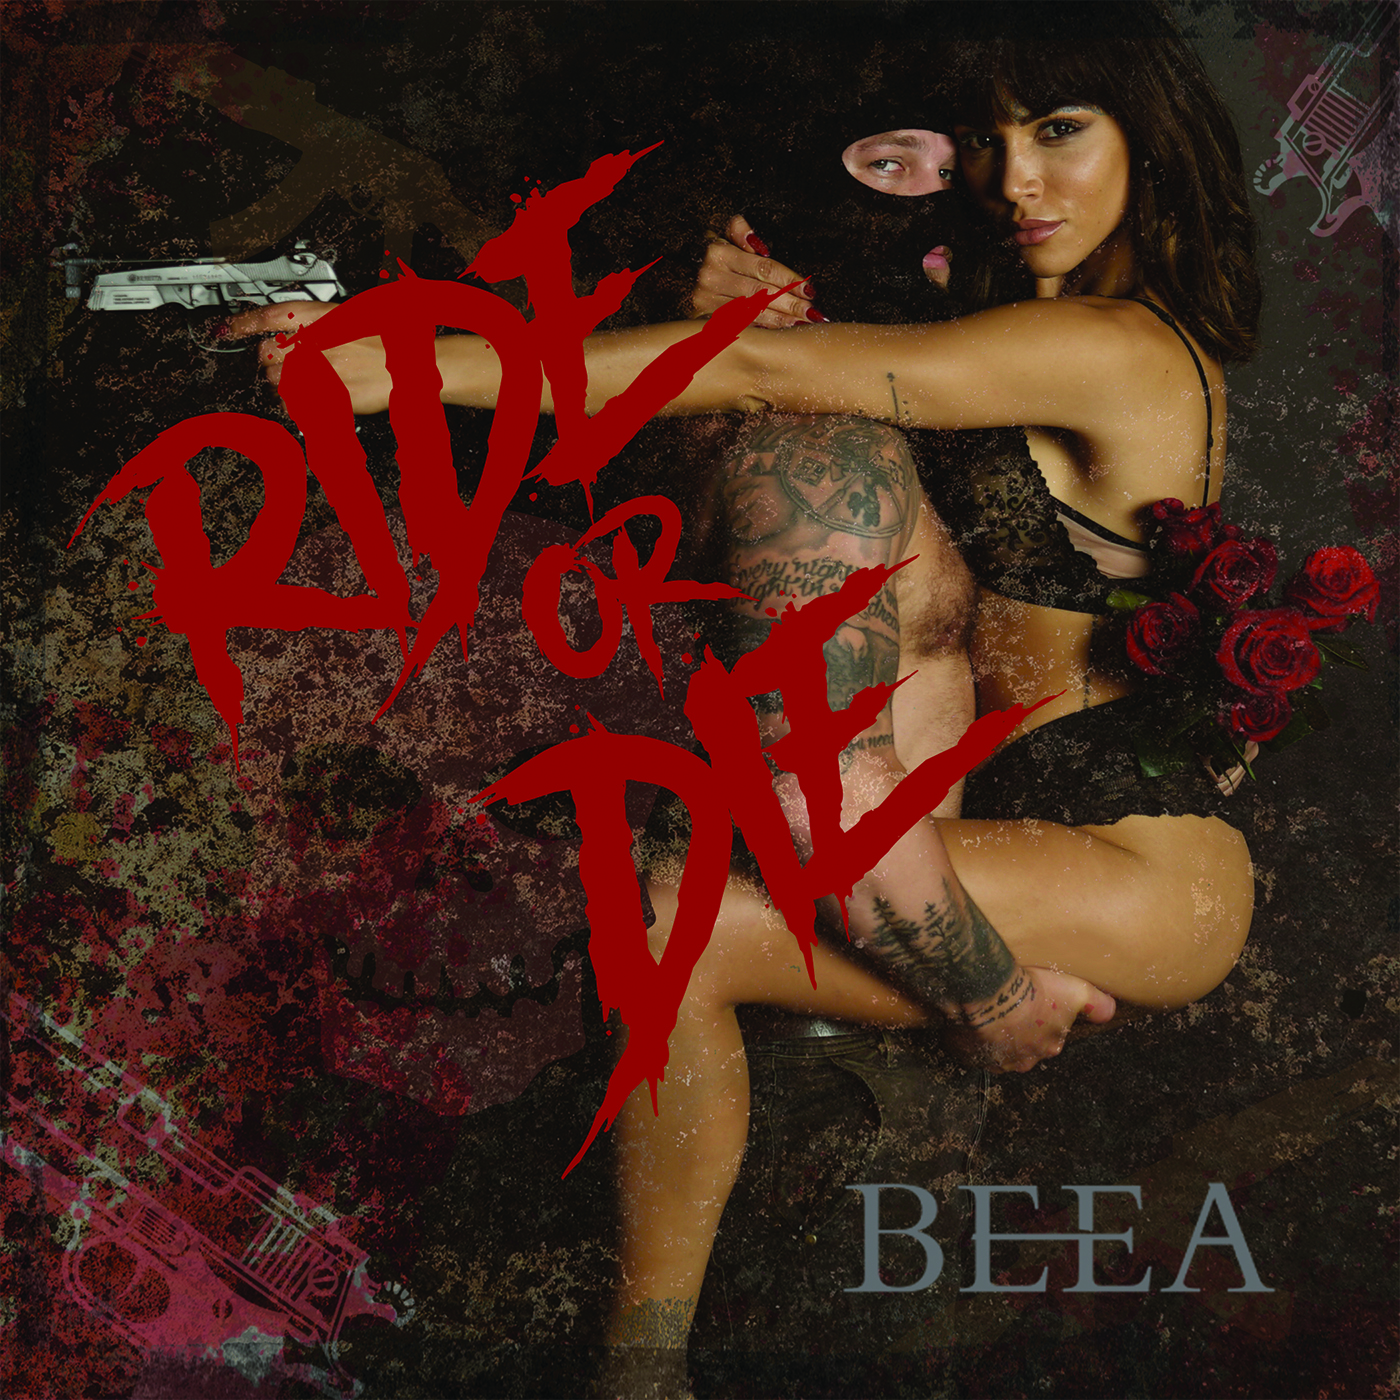 Beea – “Ride or Die” [VIDEO]